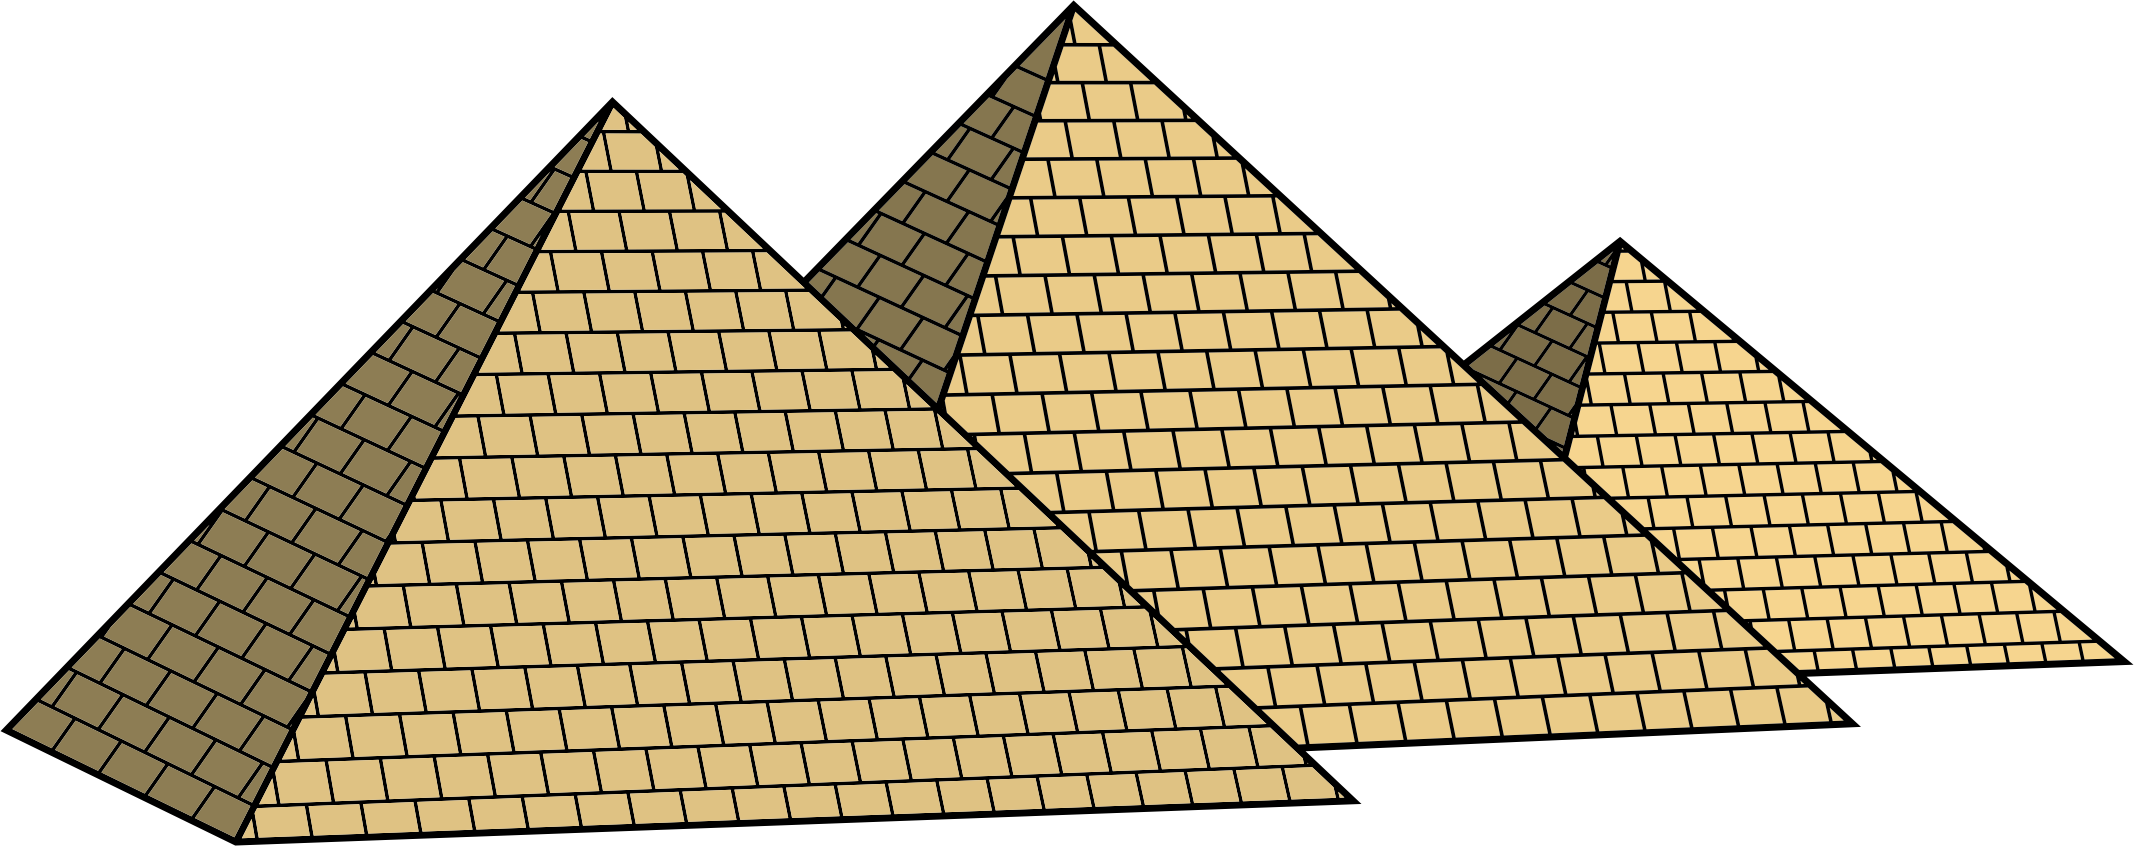 Pyramid PNG صورة خلفية